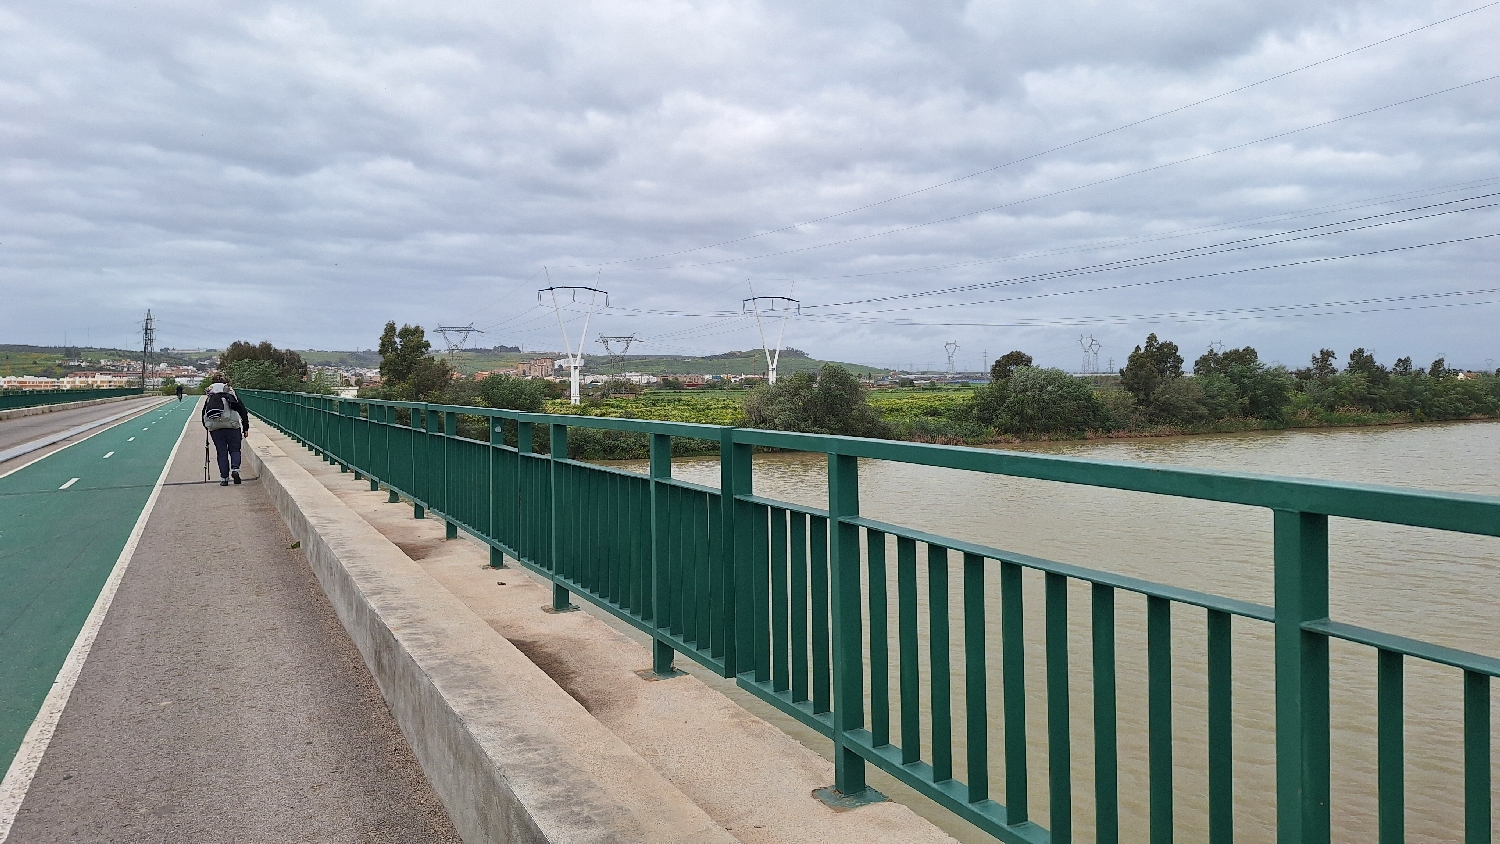 Vía de la Plata, Sevilla, a Puente de la Señorita biciklis és gyalogos híd